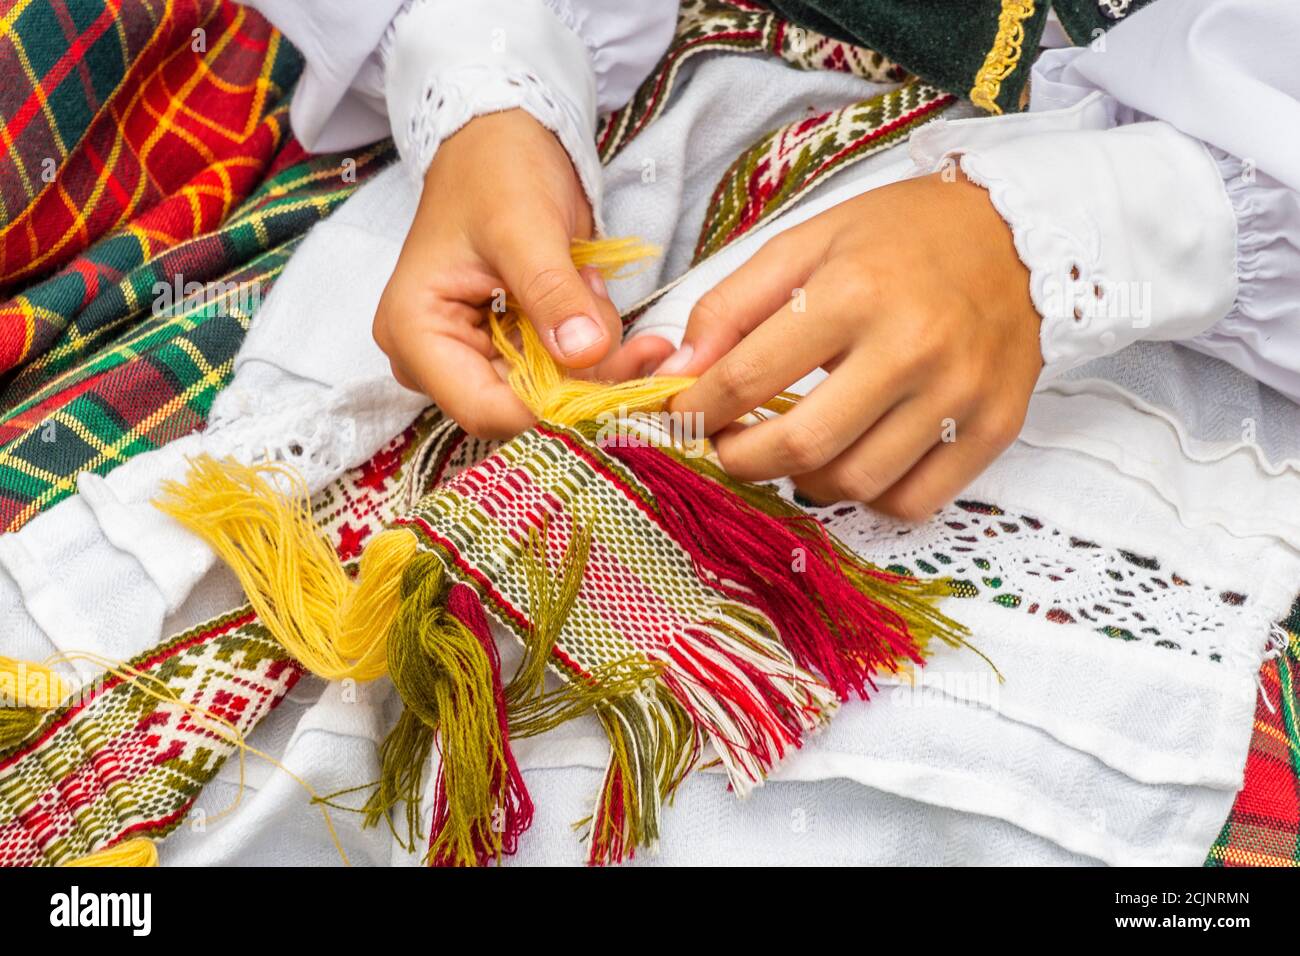 Litauische Nationalkleid Ornament. Mädchen in traditionellen Kleidern  Litauisch gekleidet Stockfotografie - Alamy